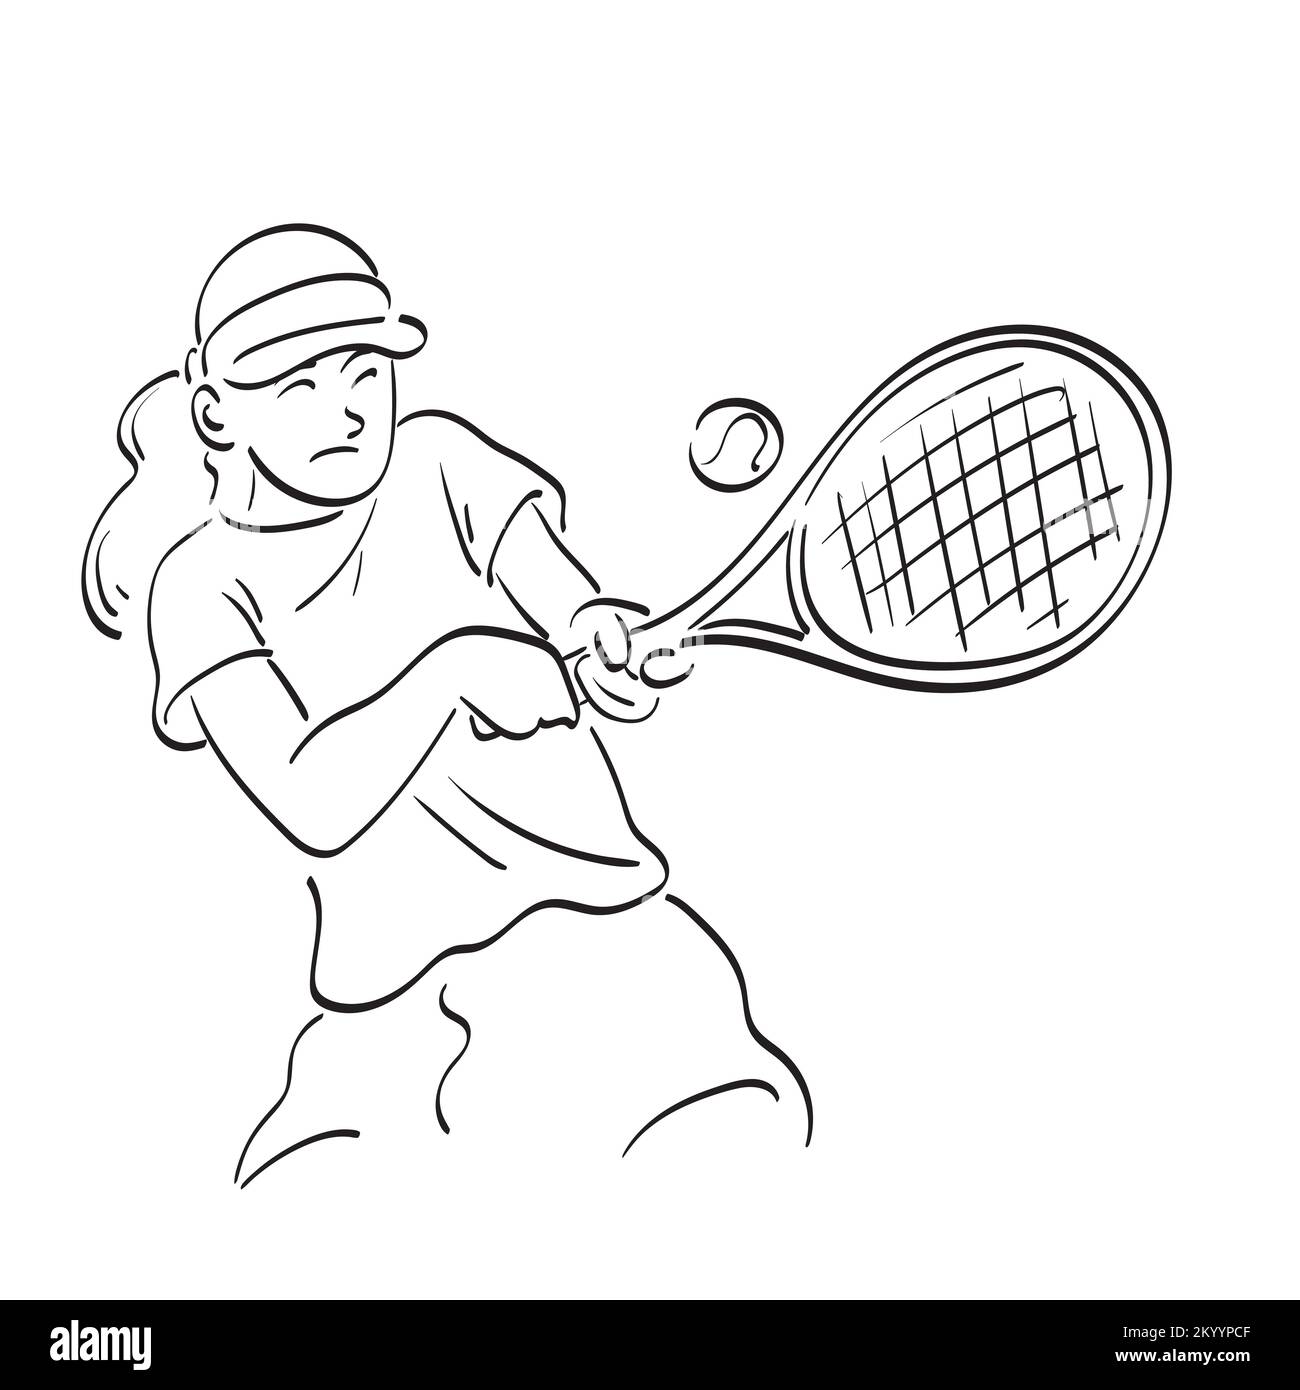 Linienkunstsportlerin, asiatische Frau, die Tennis und Schlagball spielt, mit einer Hand gezeichnet, isoliert auf weißem Hintergrund Stock Vektor